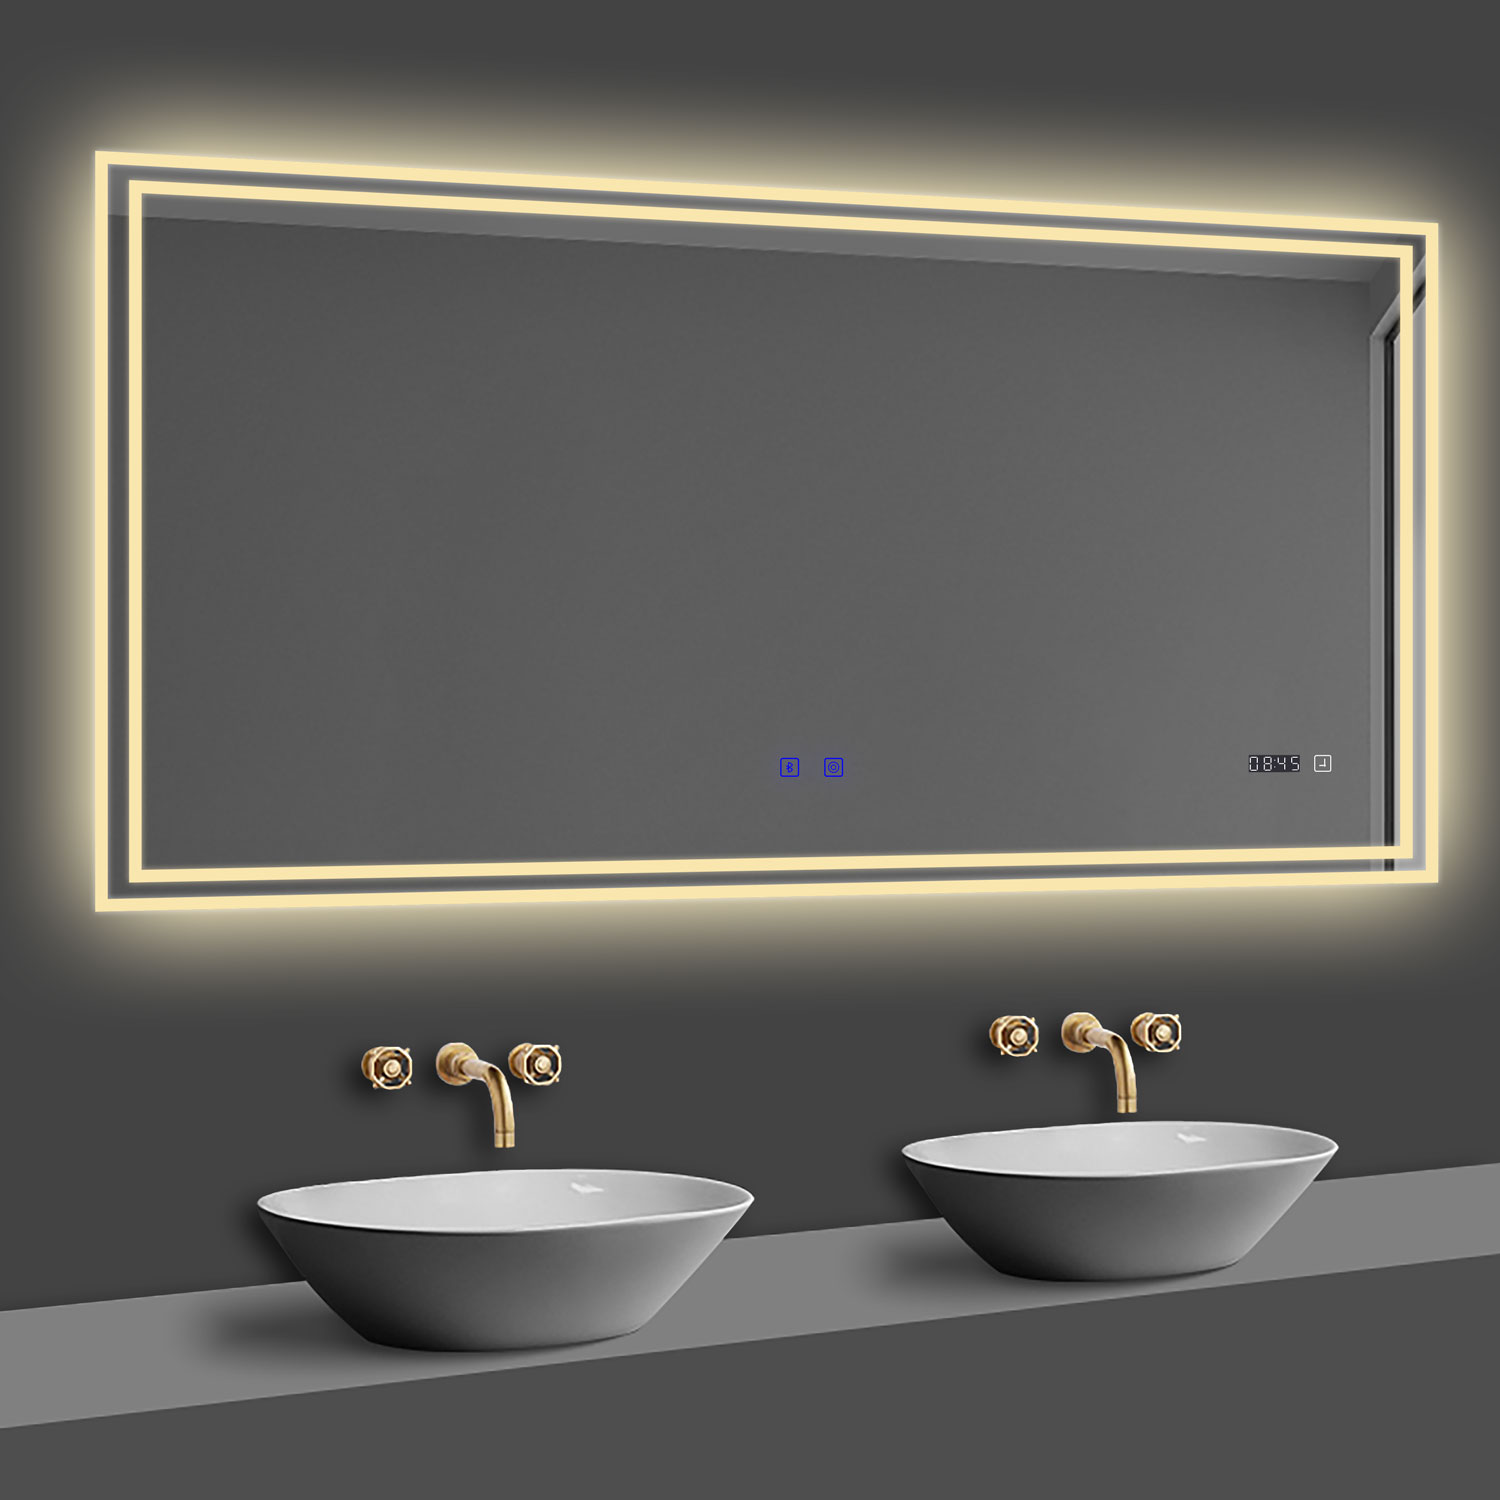 LED Badspiegel 160x80 cm Bluetooth Uhr TOUCH BESCHLAGFREI Wandspiegel Kalt/Neutral/Warmweiß ,Dimmbar